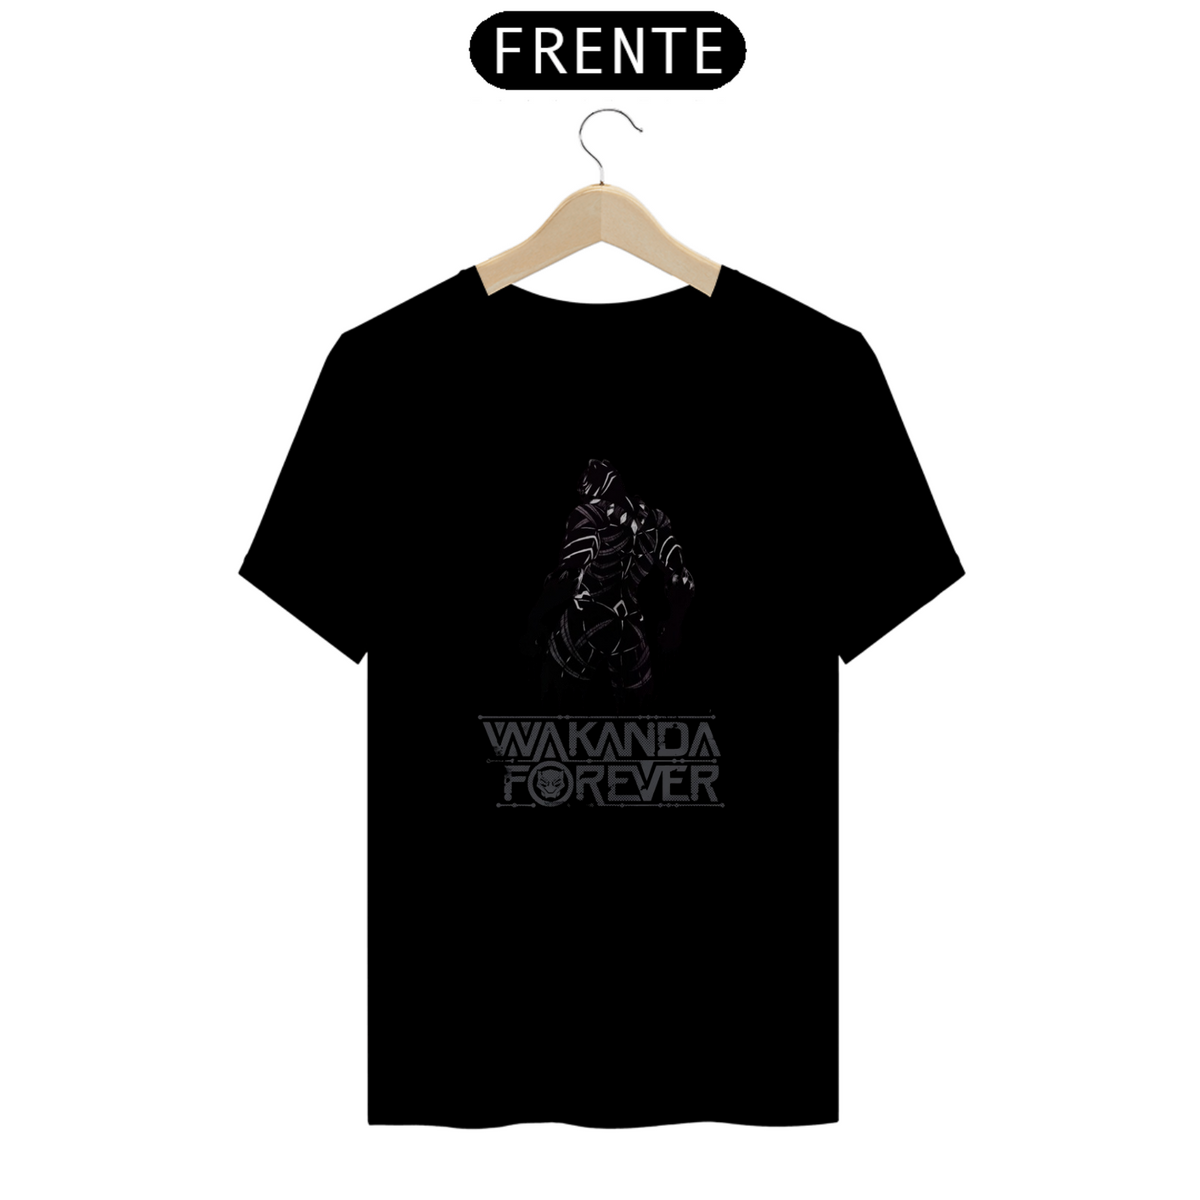 Nome do produto: Camiseta Wakanda Forever